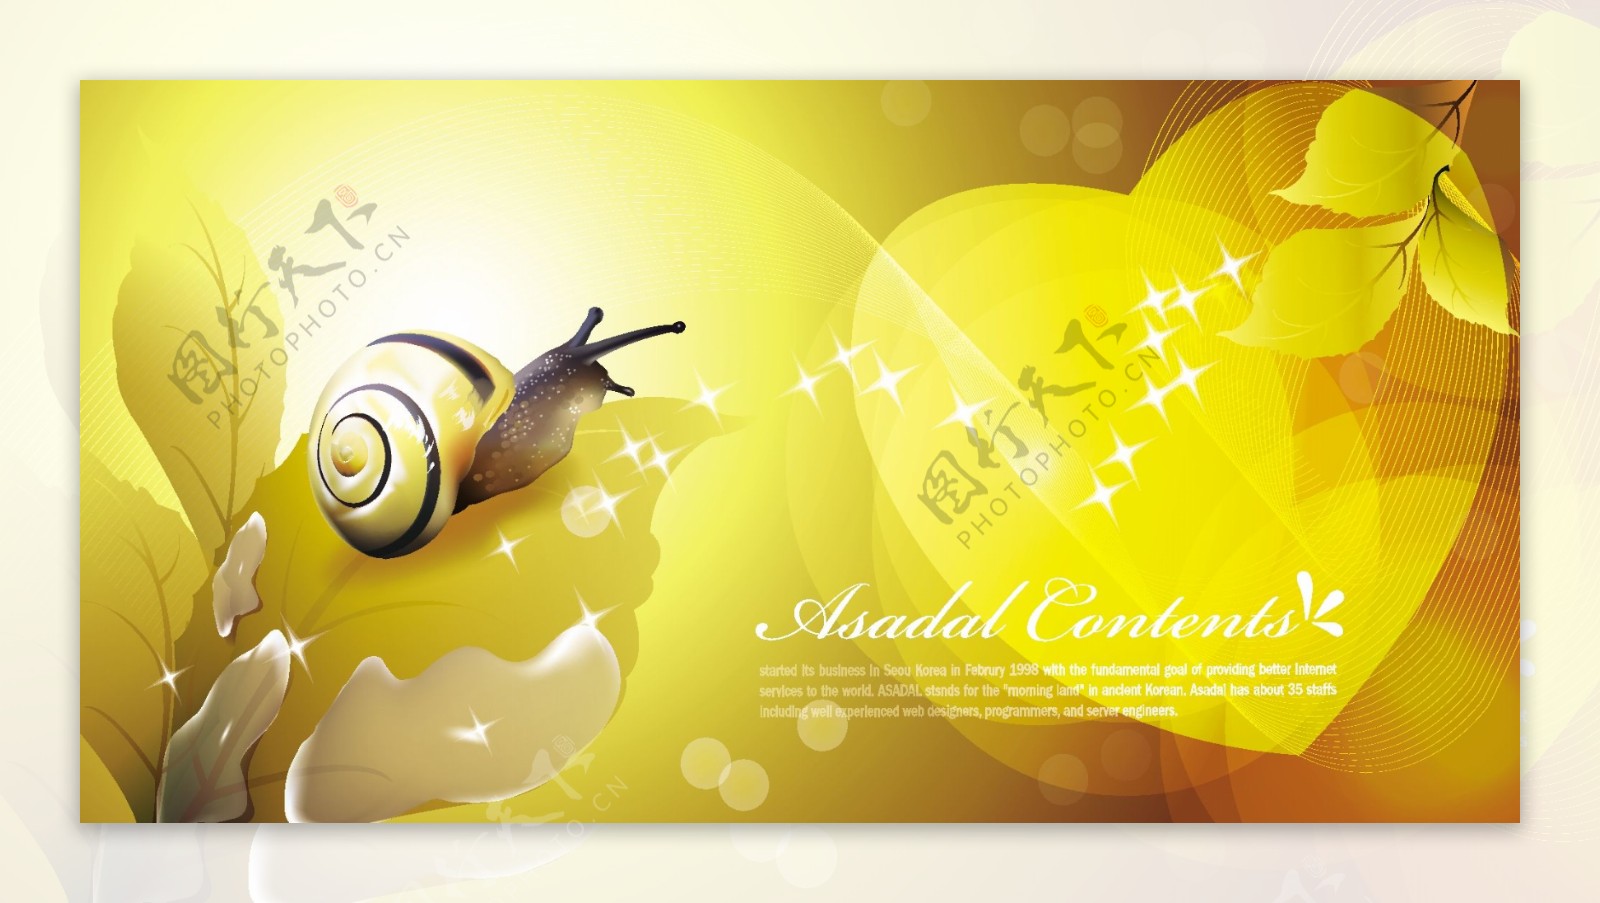 可爱蜗牛图案黄色背景图文模板